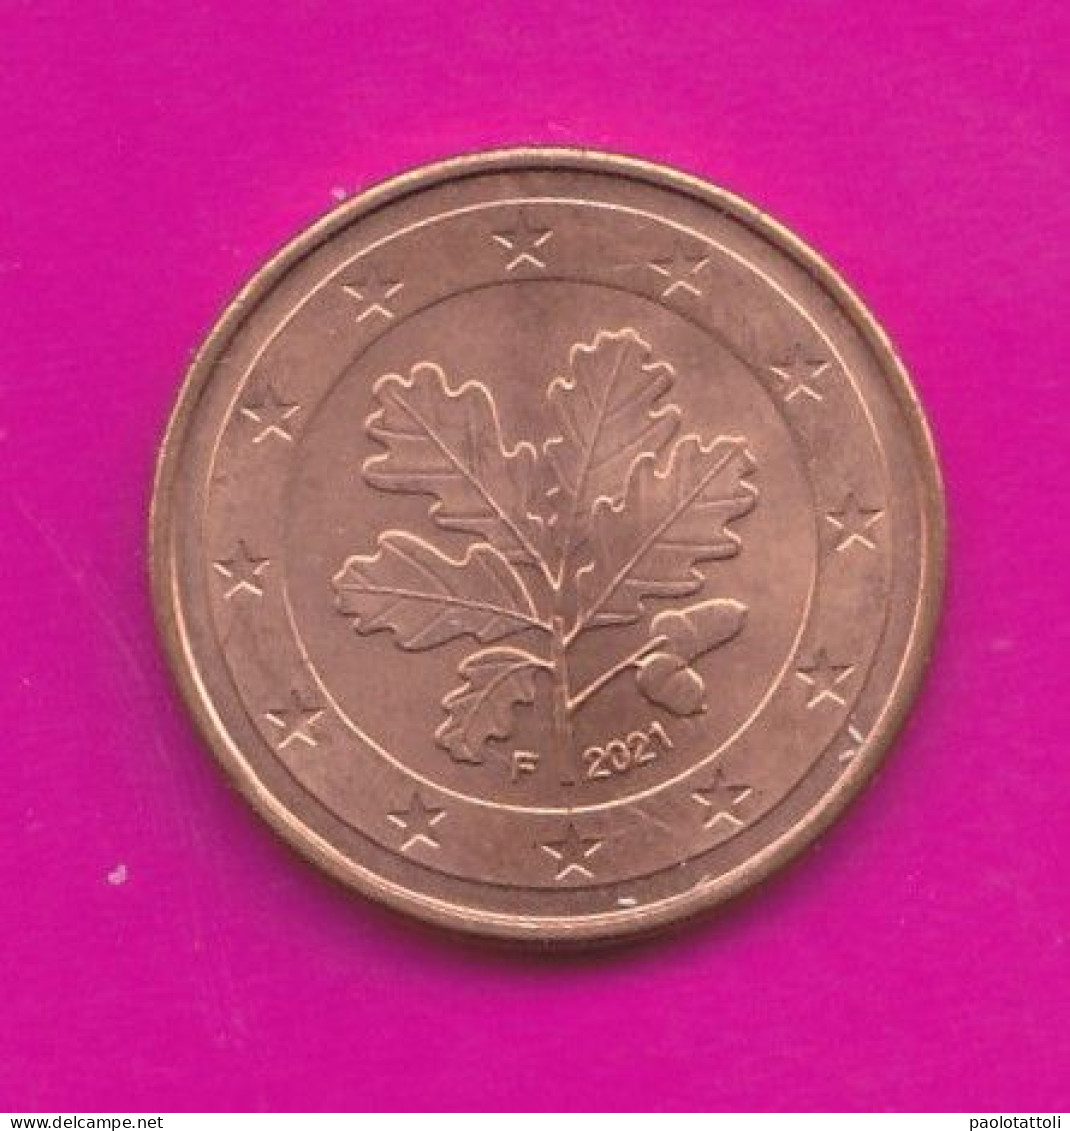 Germany, F 2021- 5 Euro Cent- Nickel Brass- Obverse Oak Leaf. Reverse Denomination- SPL, EF, SUP, VZ- - Deutschland